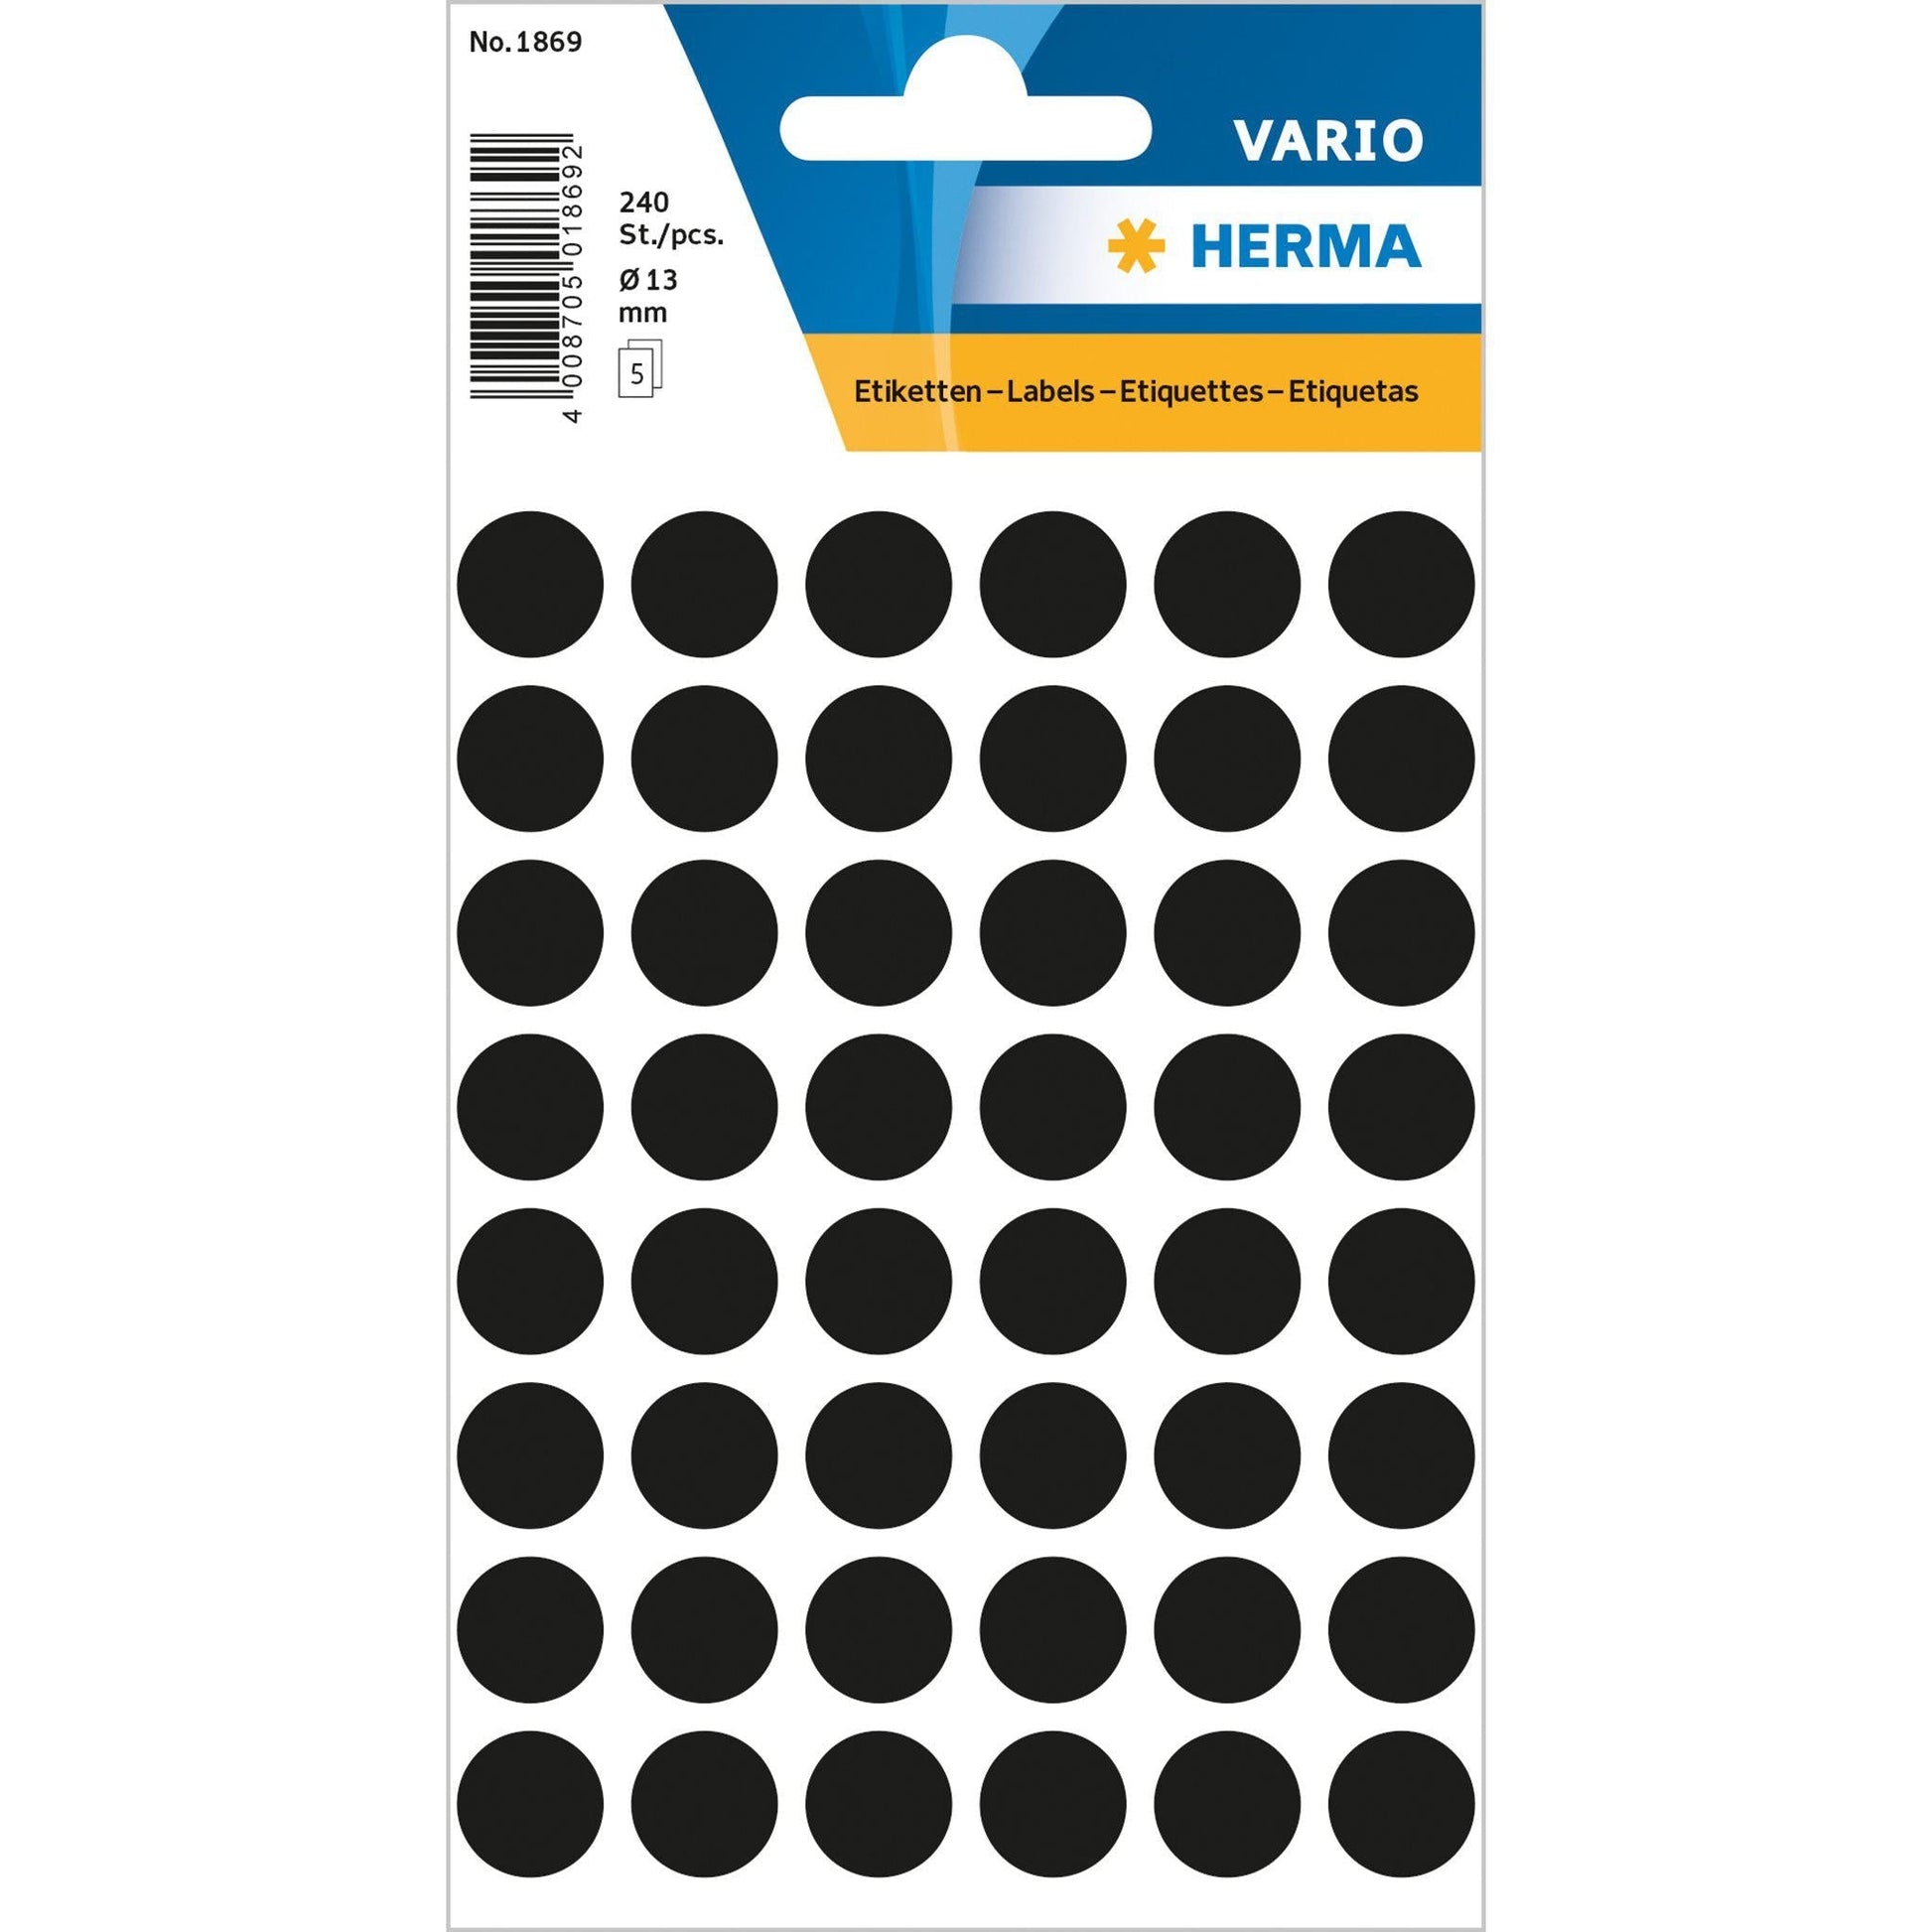 HRM Vario Etiquettes Rondes-Étiquettes-Herma-12 mm - 240 pièces-Noir-Papeterie du Dôme